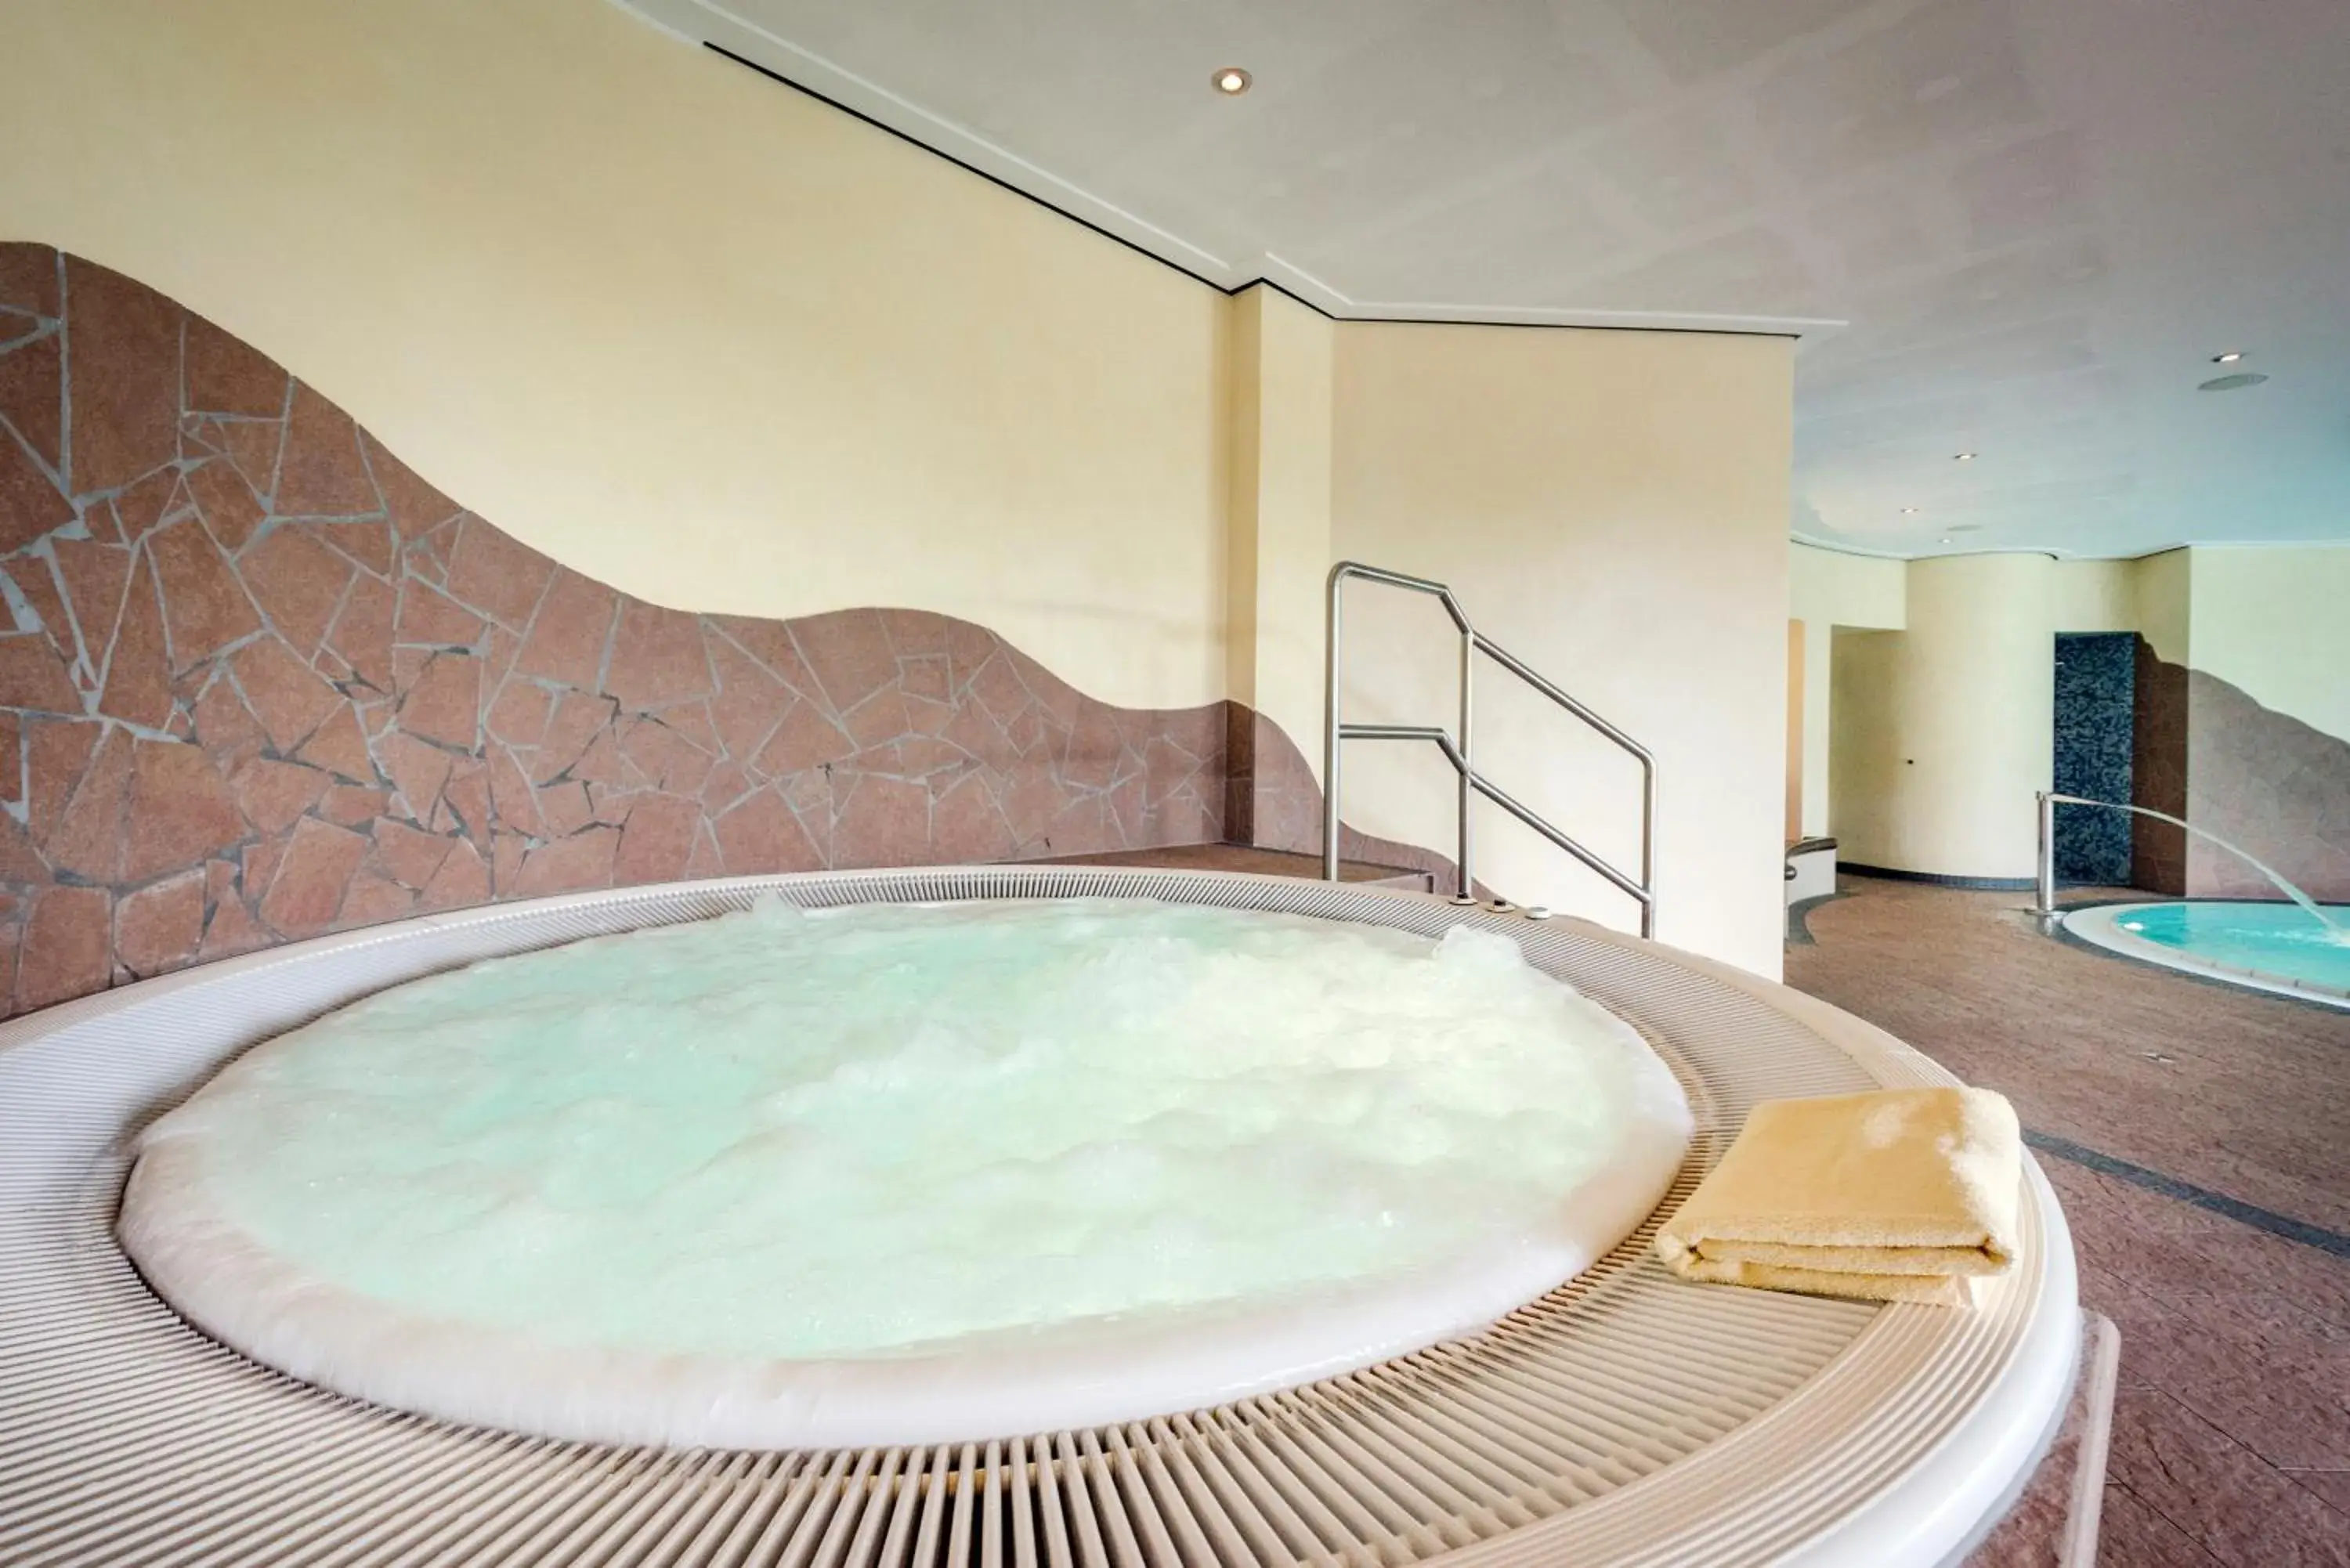 Hot Tub, Swimming Pool in Landhotel Heimathenhof